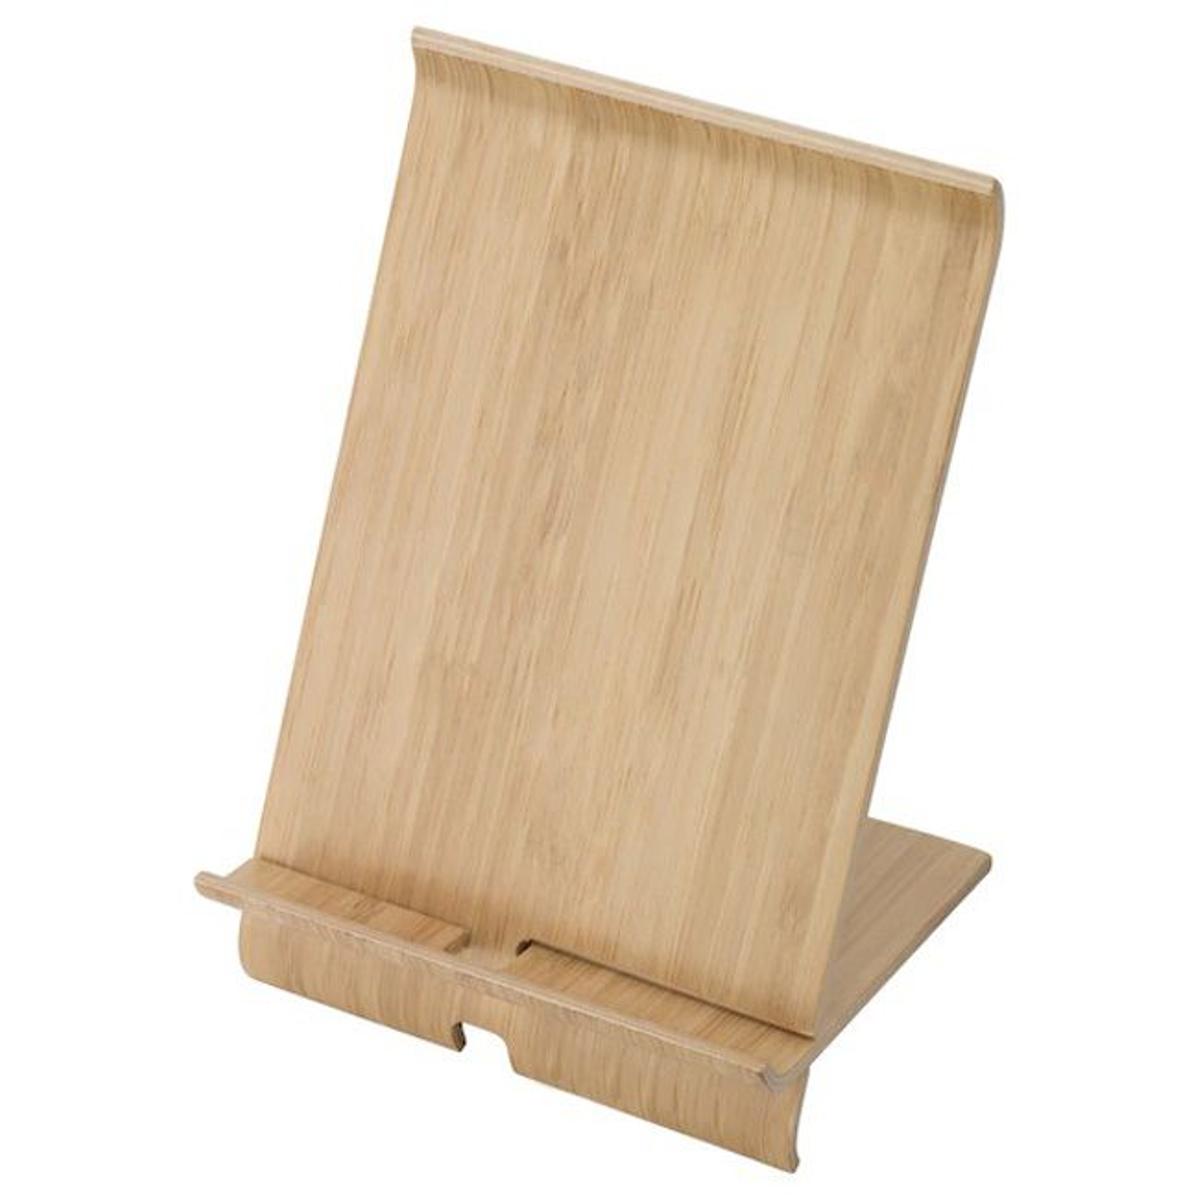 Soporte para móviles de chapa de bambú, de Ikea